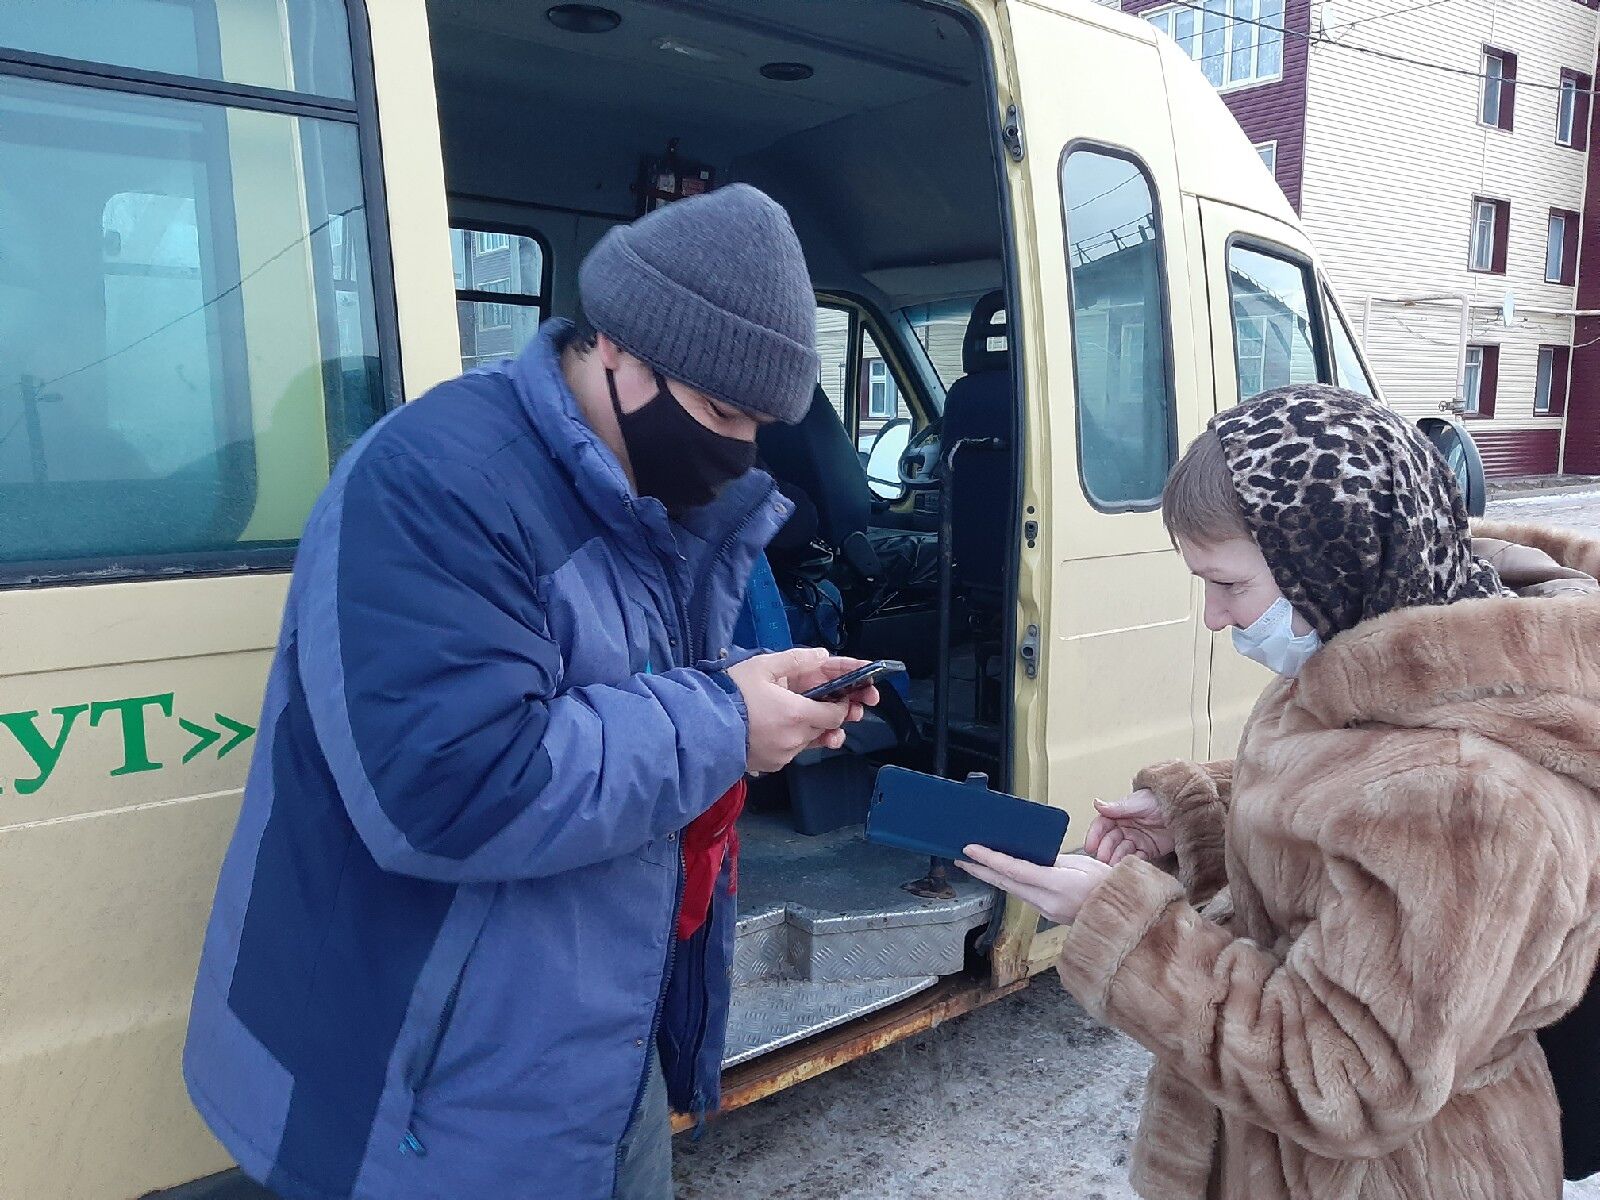 Сегодня с утра в автобусах у пассажиров проверяли QR-коды